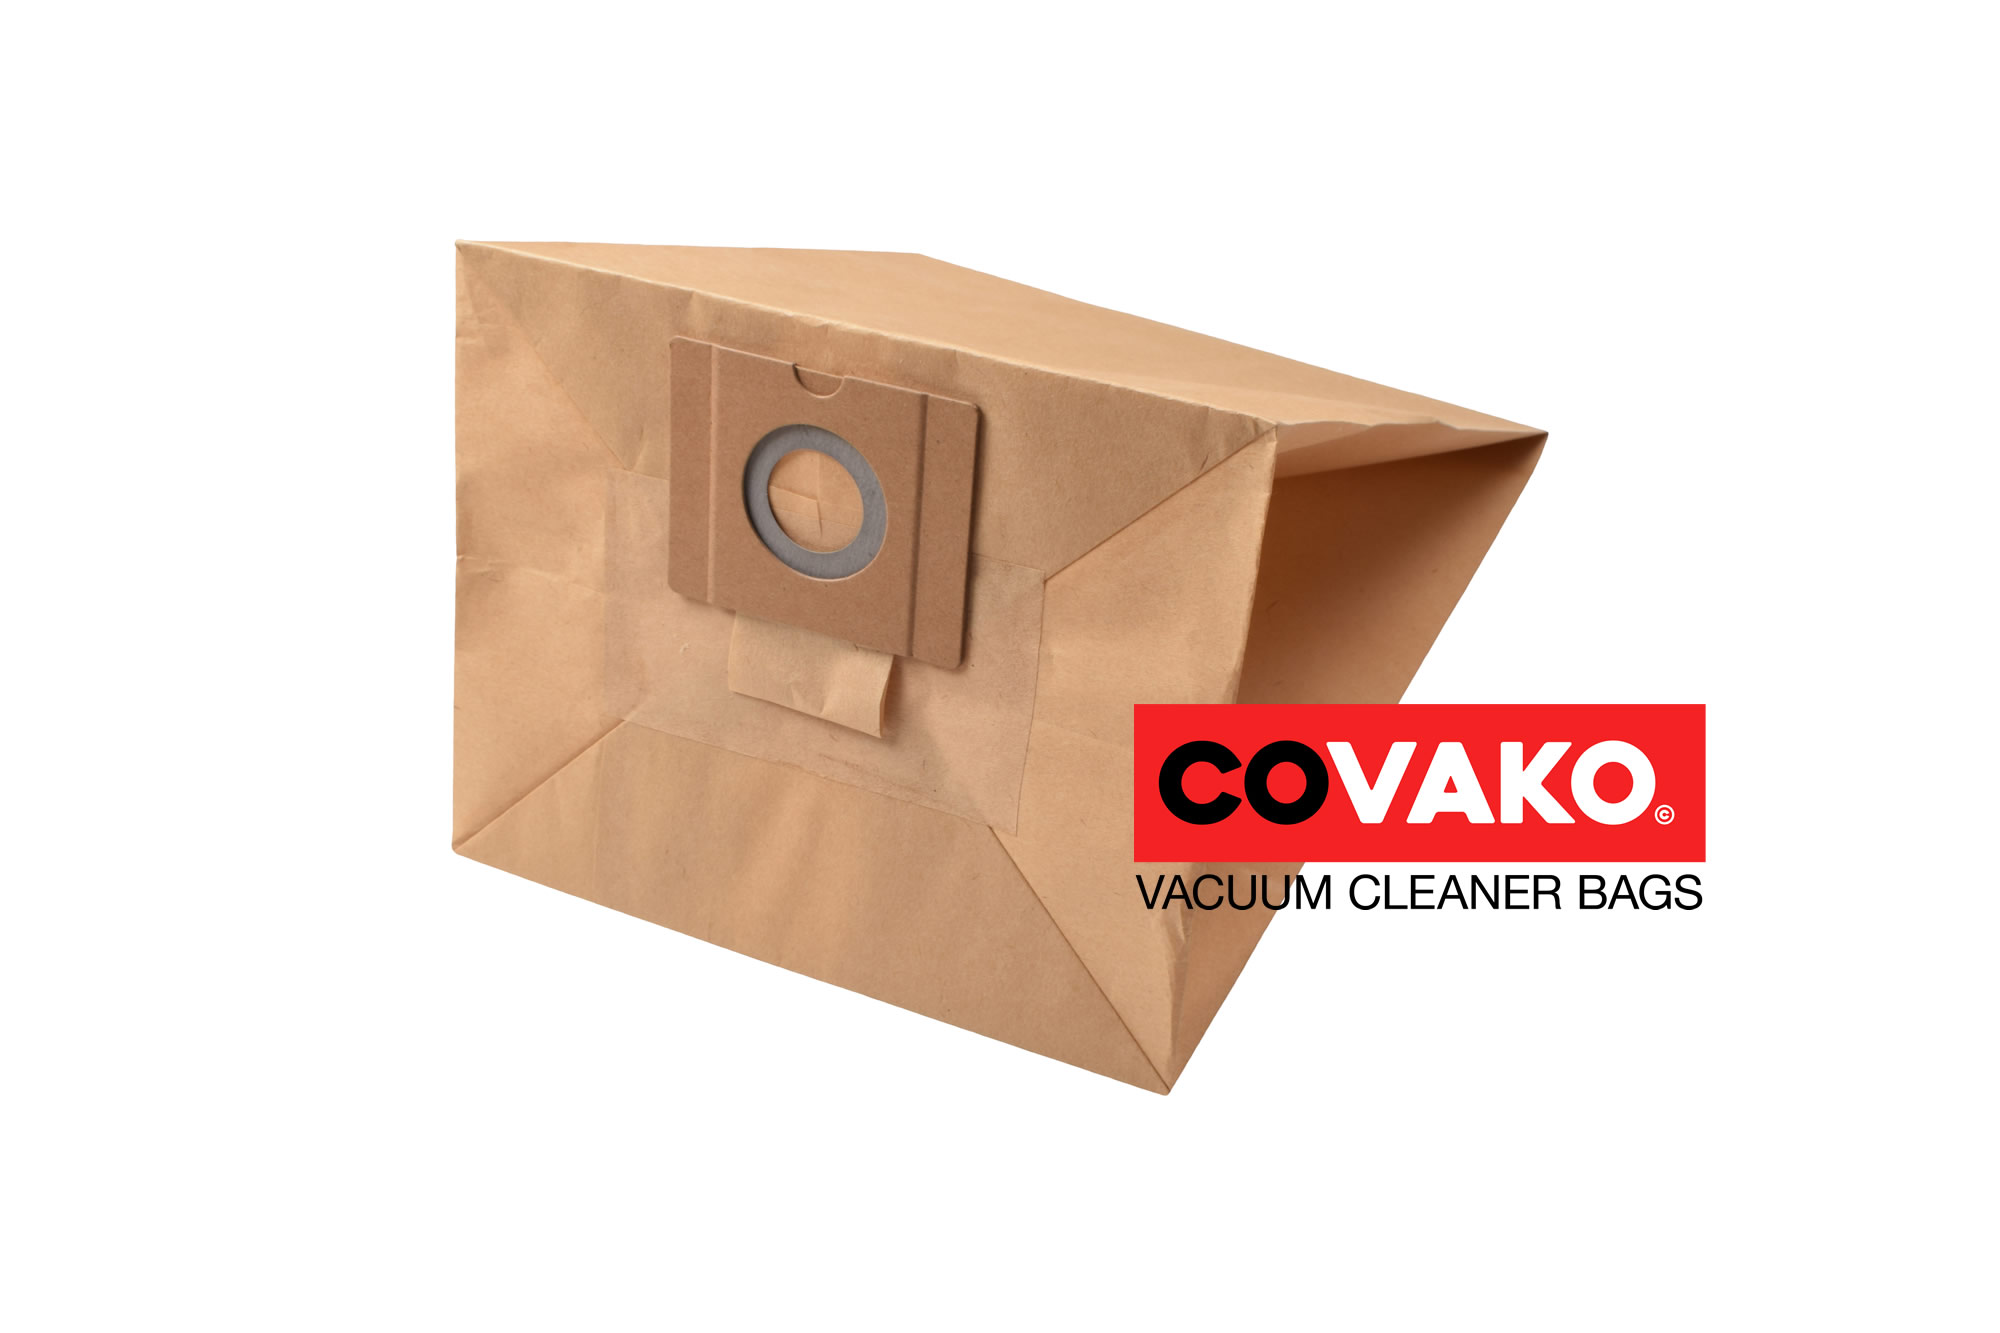 I-vac Cube / Paper - I-vac vacuum cleaner bags